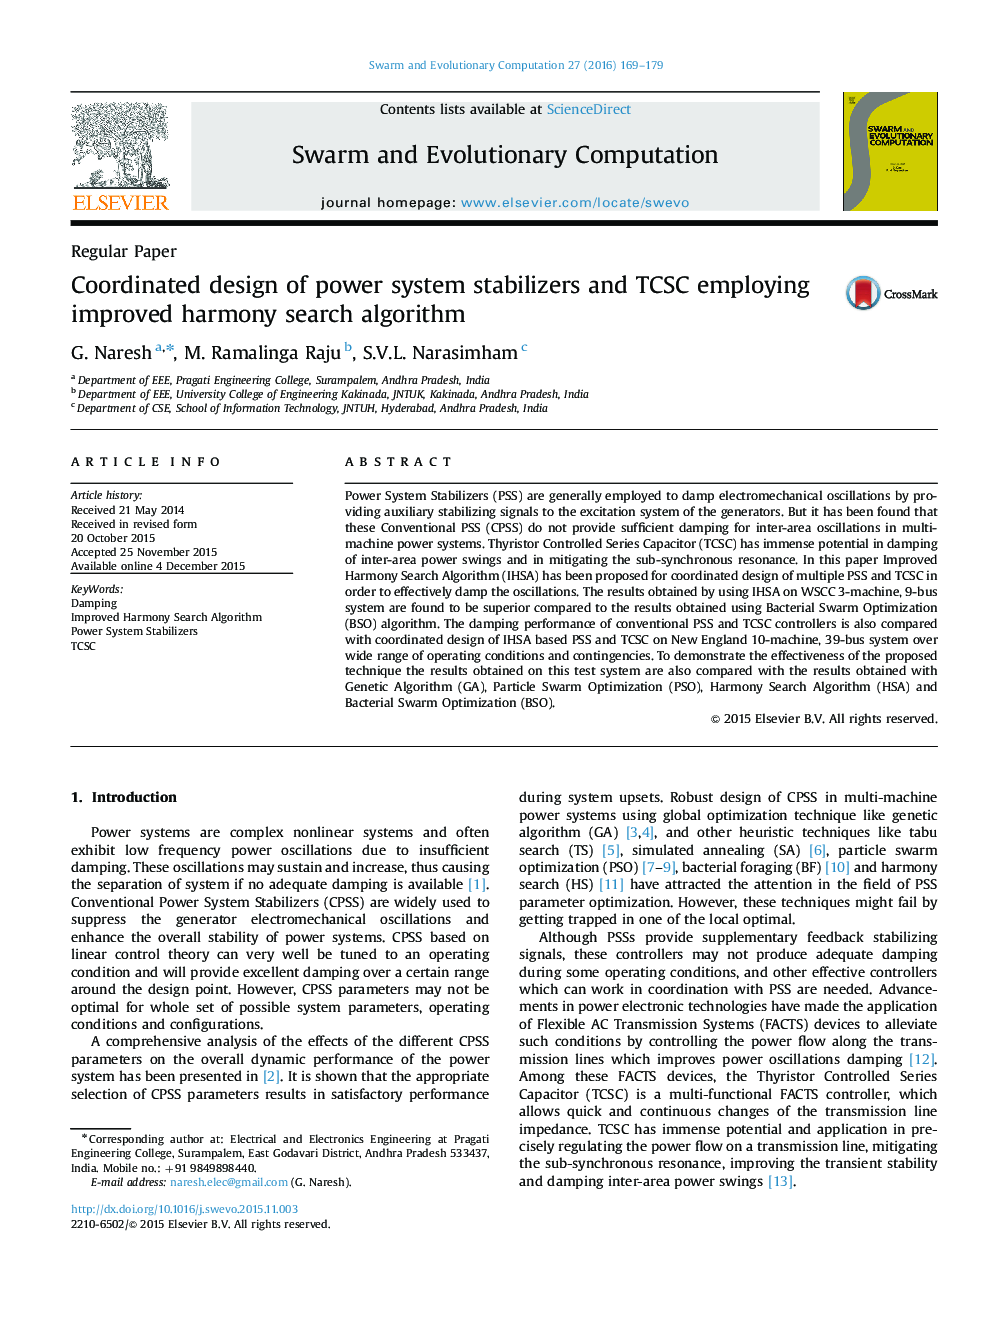 طراحی هماهنگ پایدار کننده های سیستم قدرت و TCSC  با استفاده از الگوریتم بهبود یافته ی جستجوی هارمونی